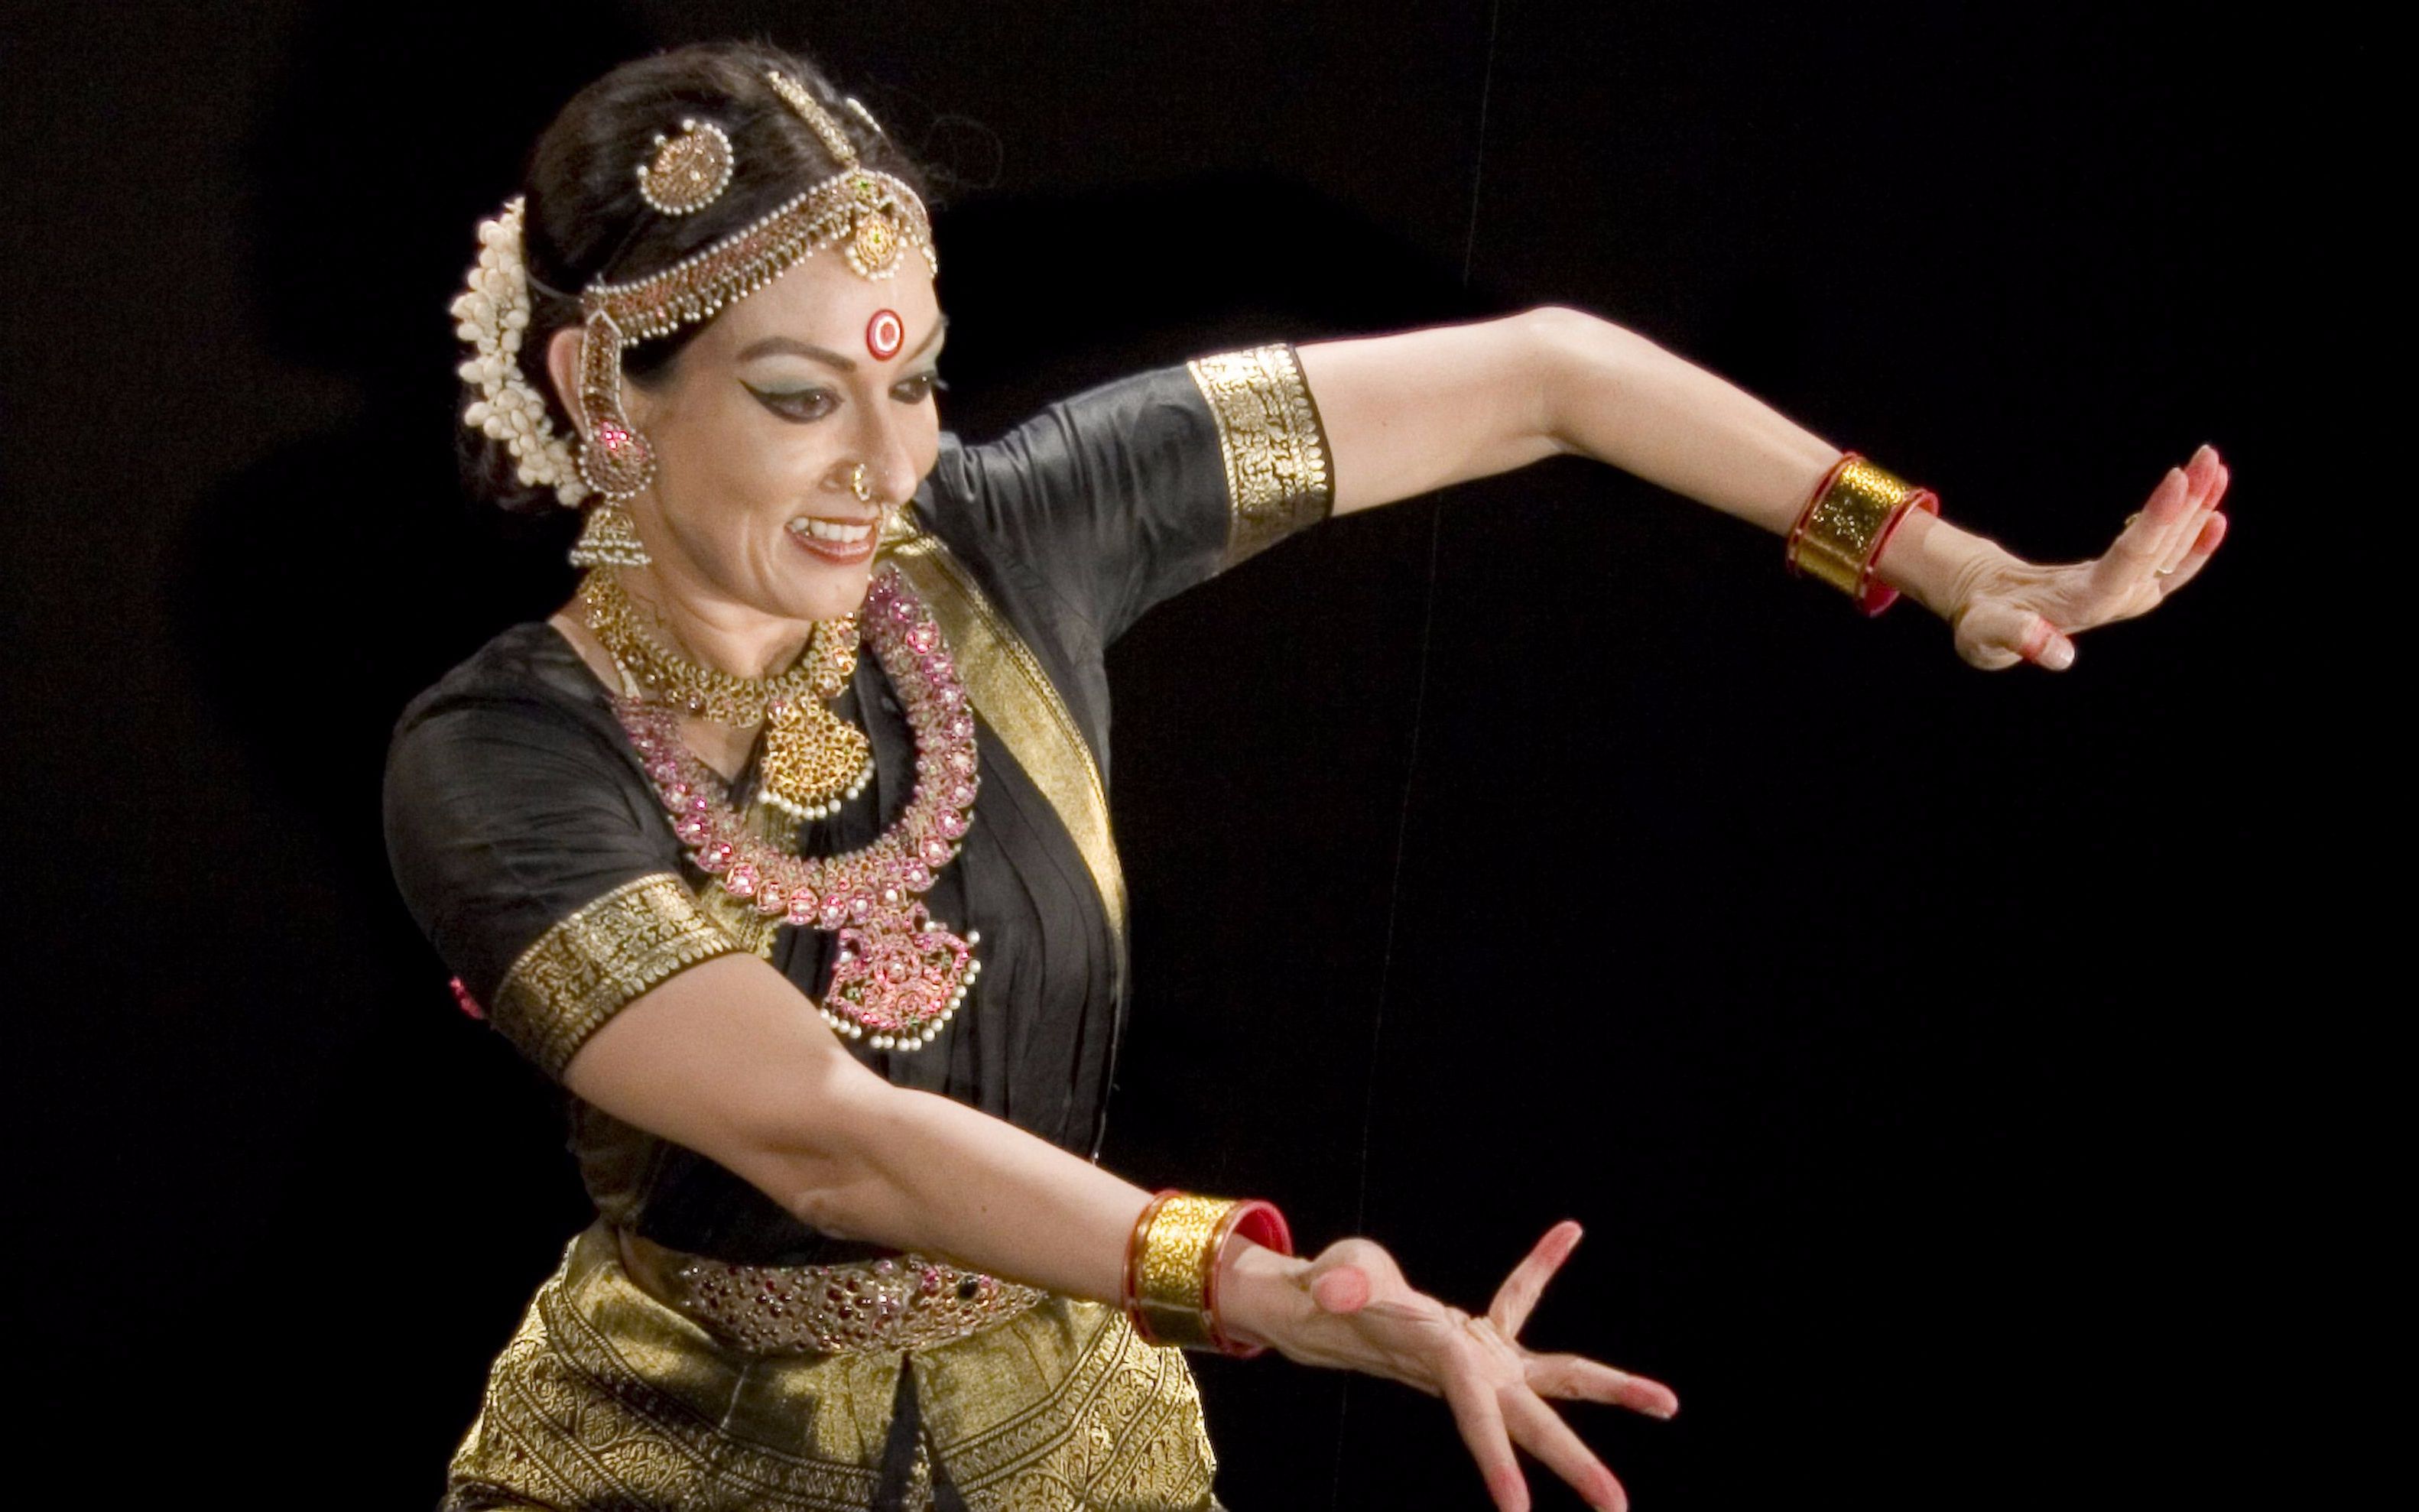 印度古典舞大师mallika sarabhai表演婆罗多舞和库契普迪舞